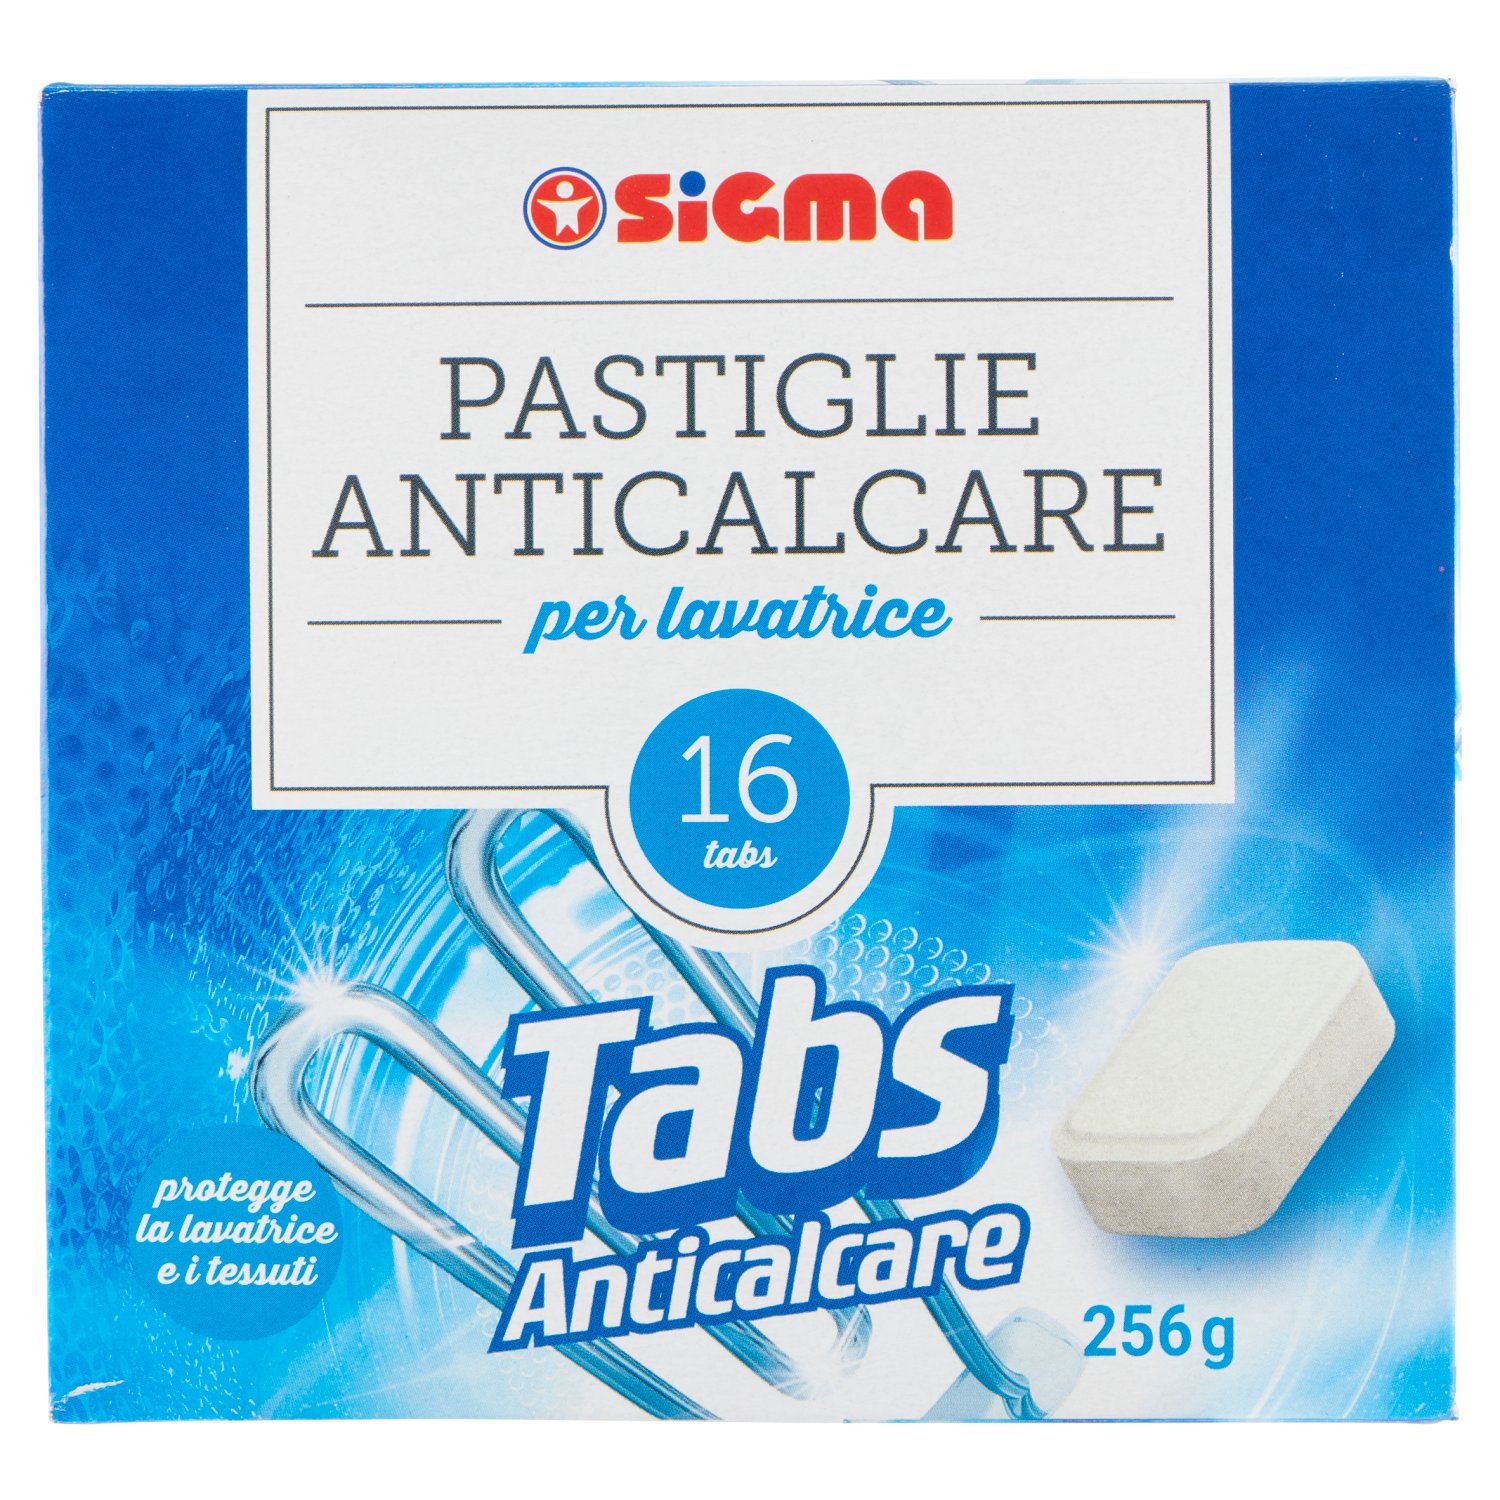 Sigma Pastiglie Anticalcare per lavatrice Tabs Anticalcare 16 x 16 g -  SuperSIGMA